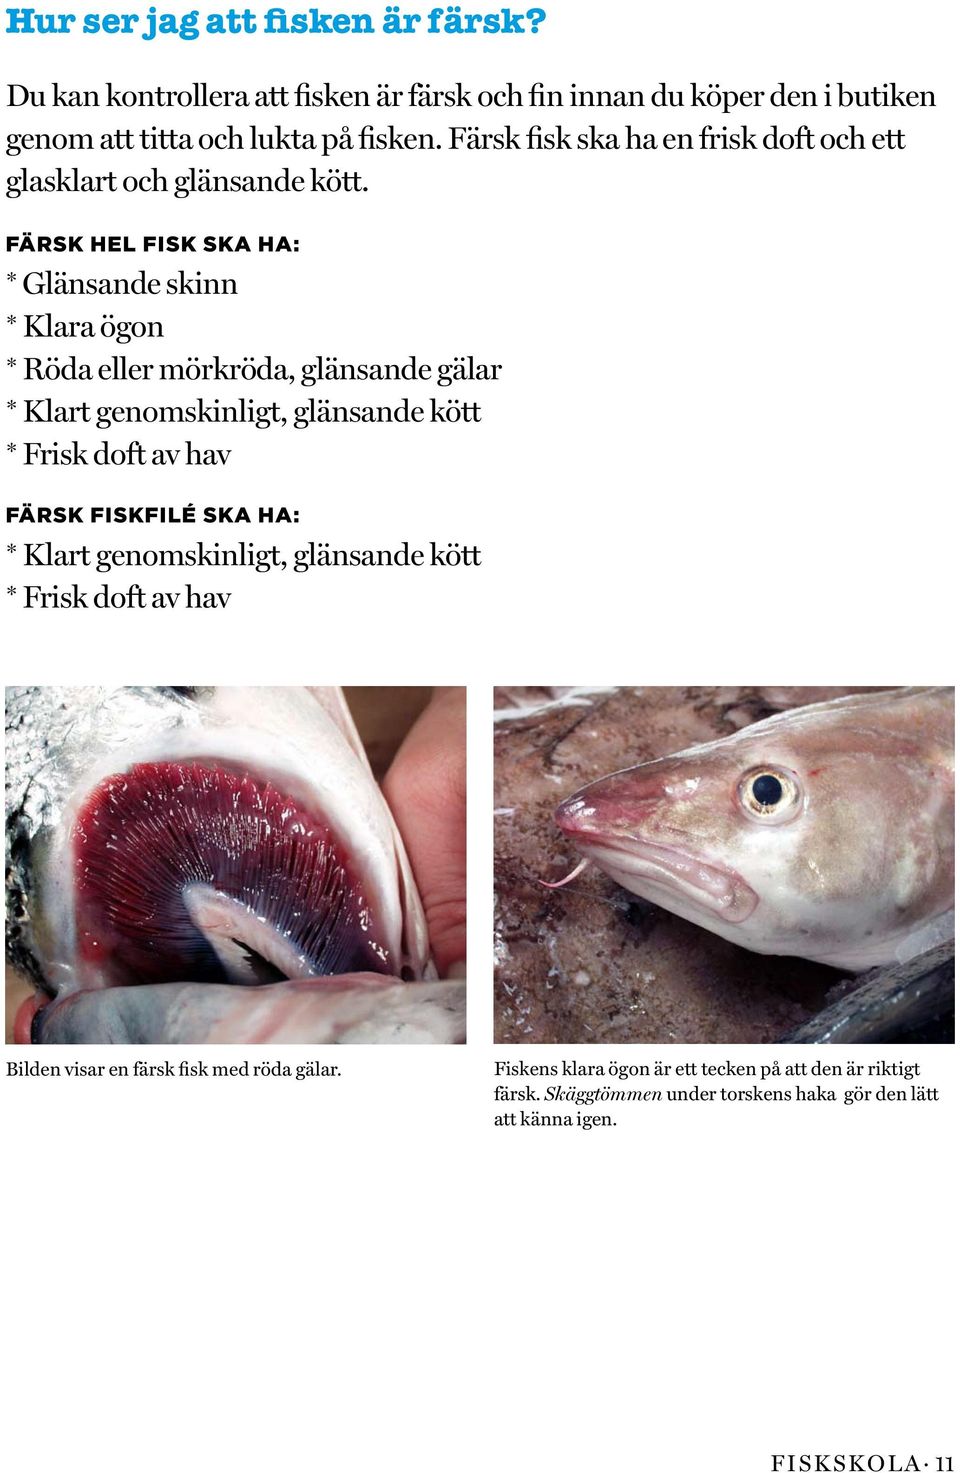 Färsk hel fisk ska ha: * Glänsande skinn * Klara ögon * Röda eller mörkröda, glänsande gälar * Klart genomskinligt, glänsande kött * Frisk doft av hav Färsk